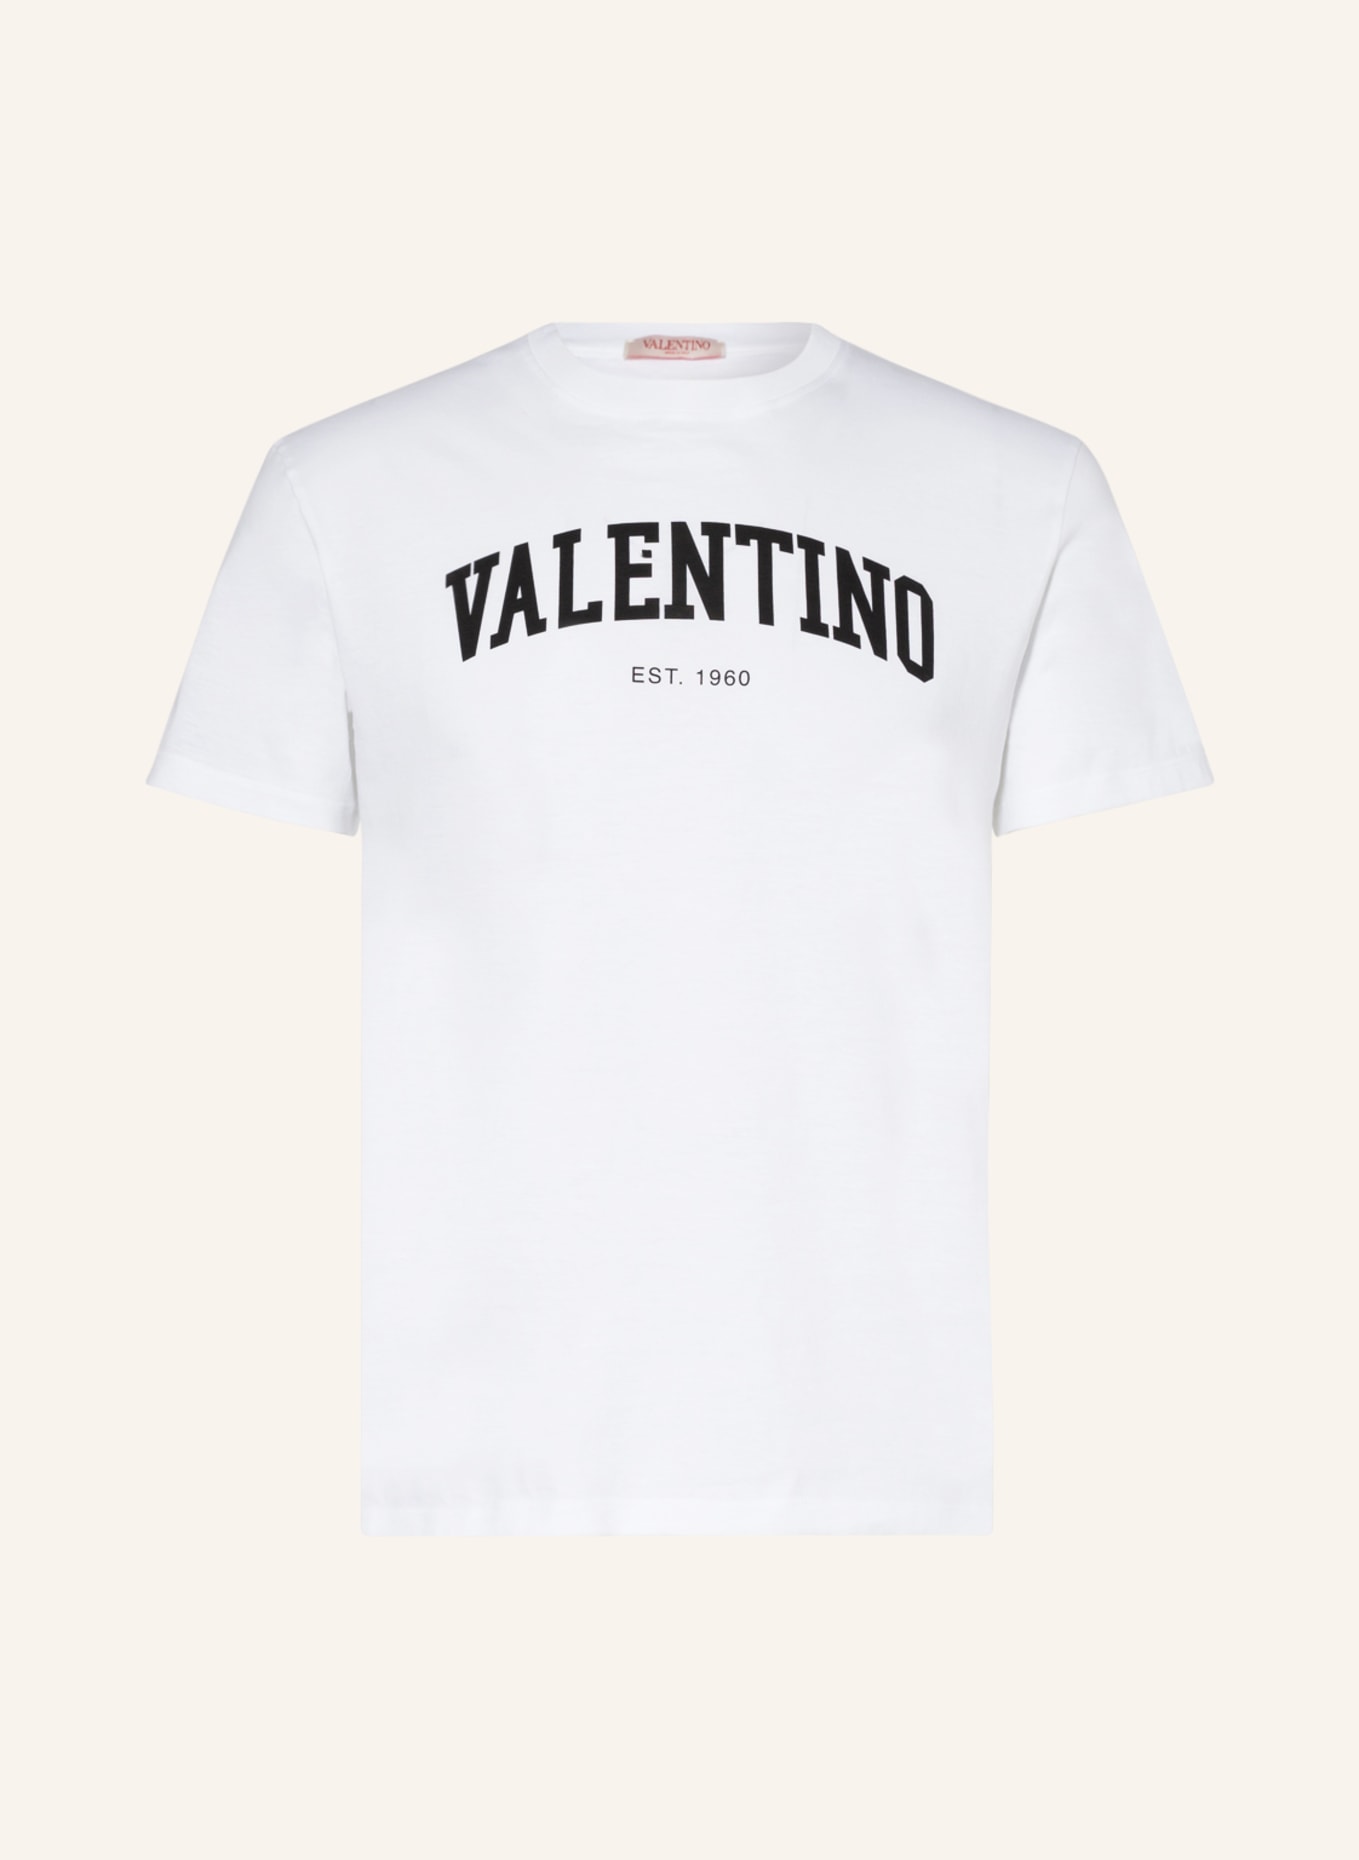 VALENTINO T-Shirt, Farbe: WEISS/ SCHWARZ (Bild 1)